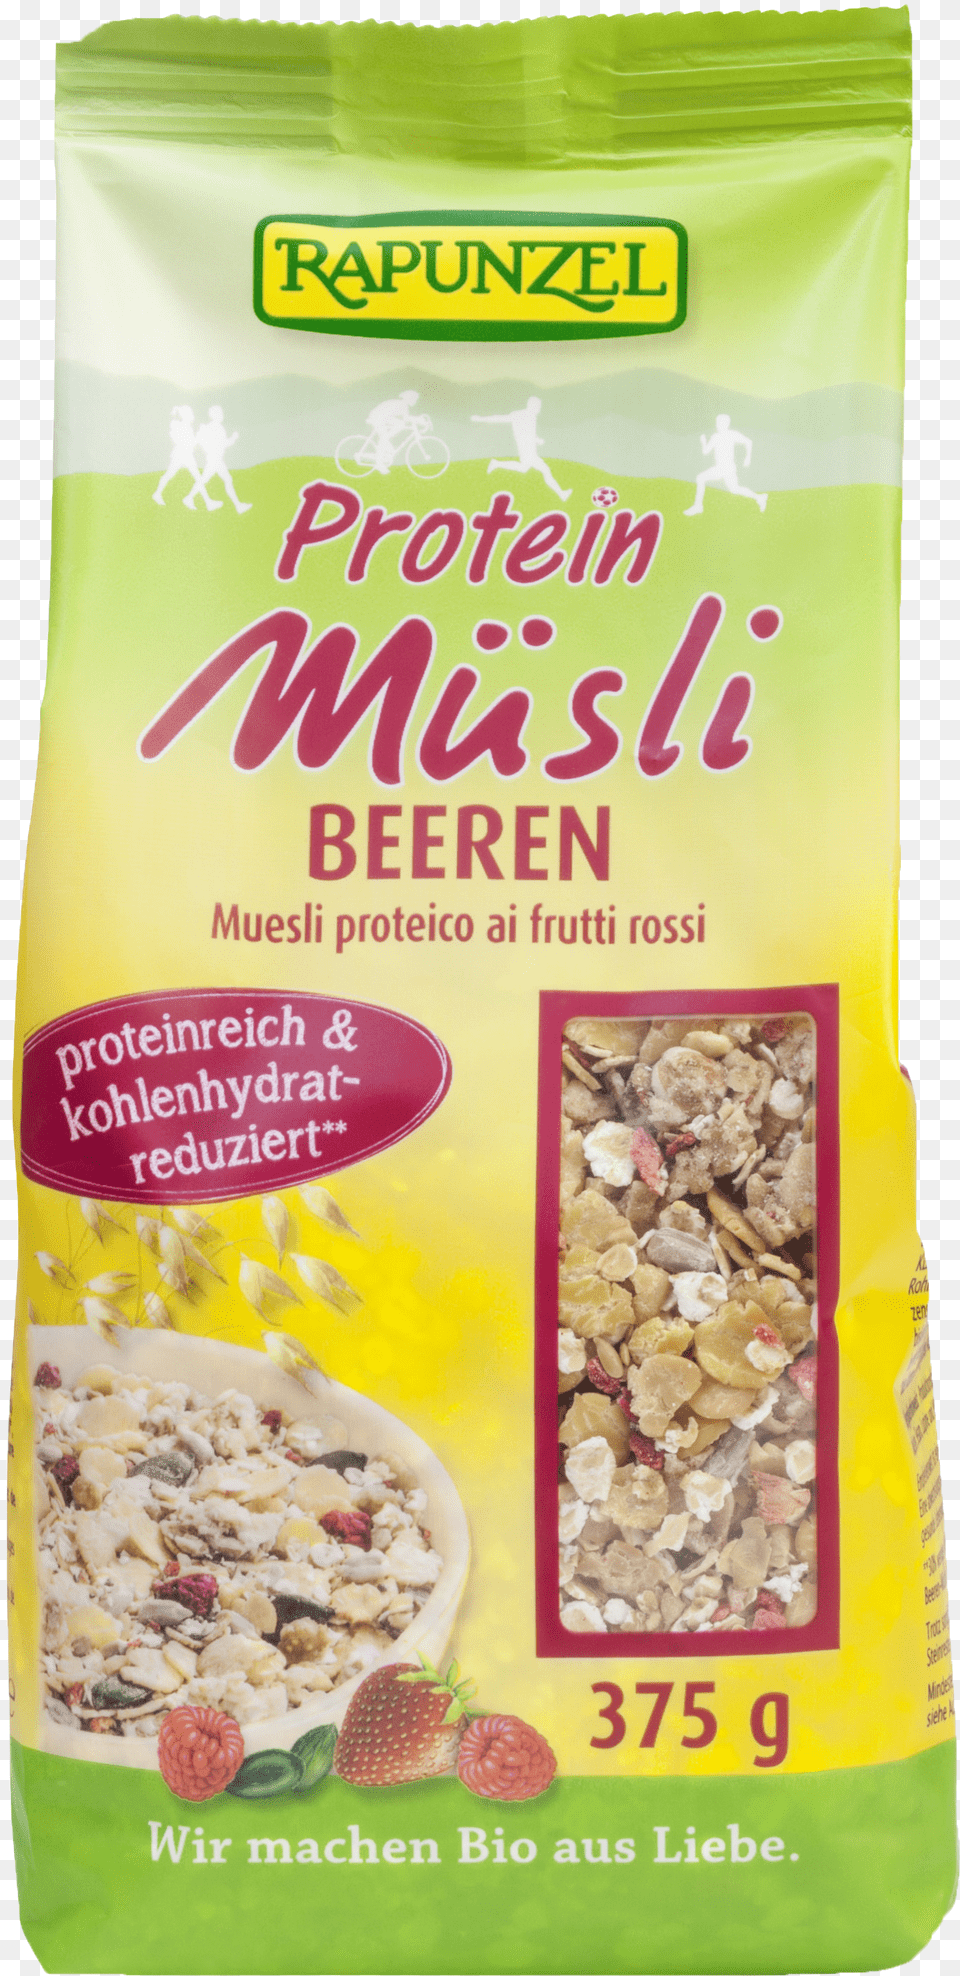 Protein Msli Beeren Rapunzel Rapunzel Organic Protein Muesli Chocolate Nut, Handwriting, Text Png Image